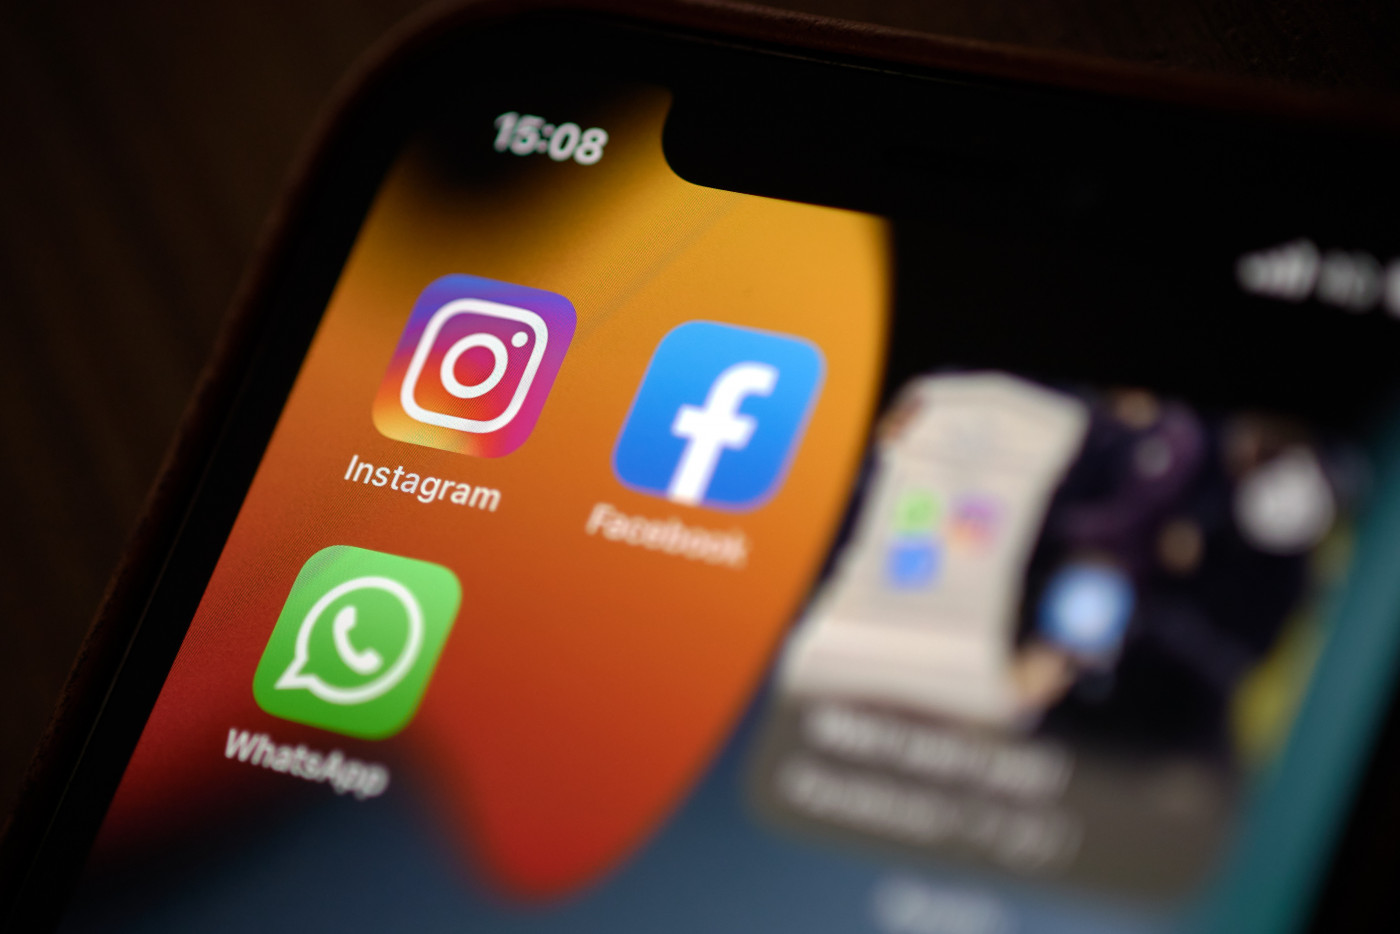 Tela de smartphone com ícones do Instagram, Fcebook e WhatsApp